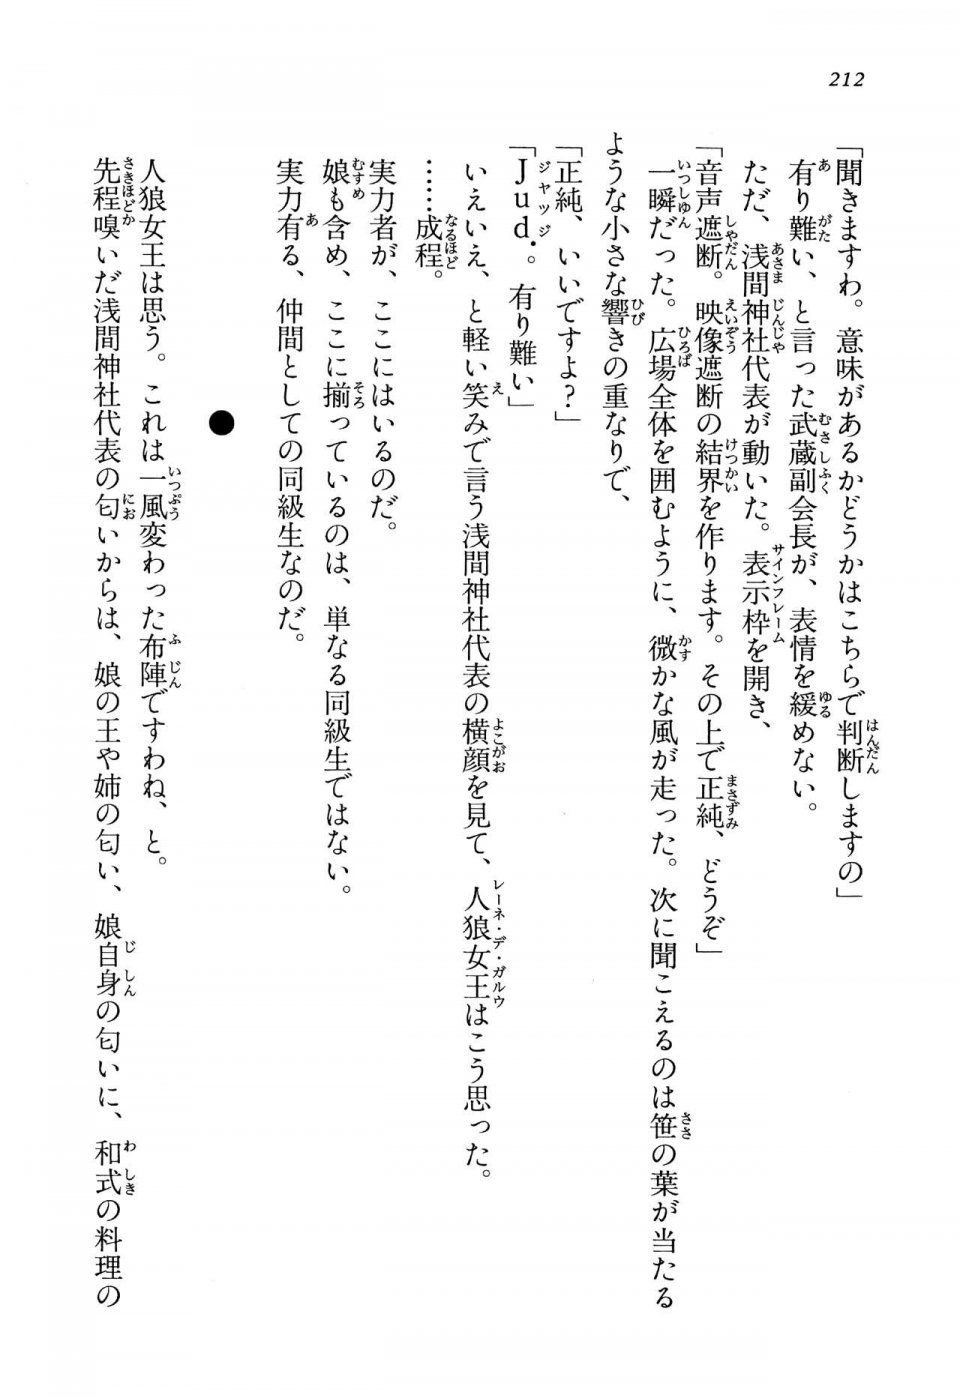 Kyoukai Senjou no Horizon LN Vol 13(6A) - Photo #212